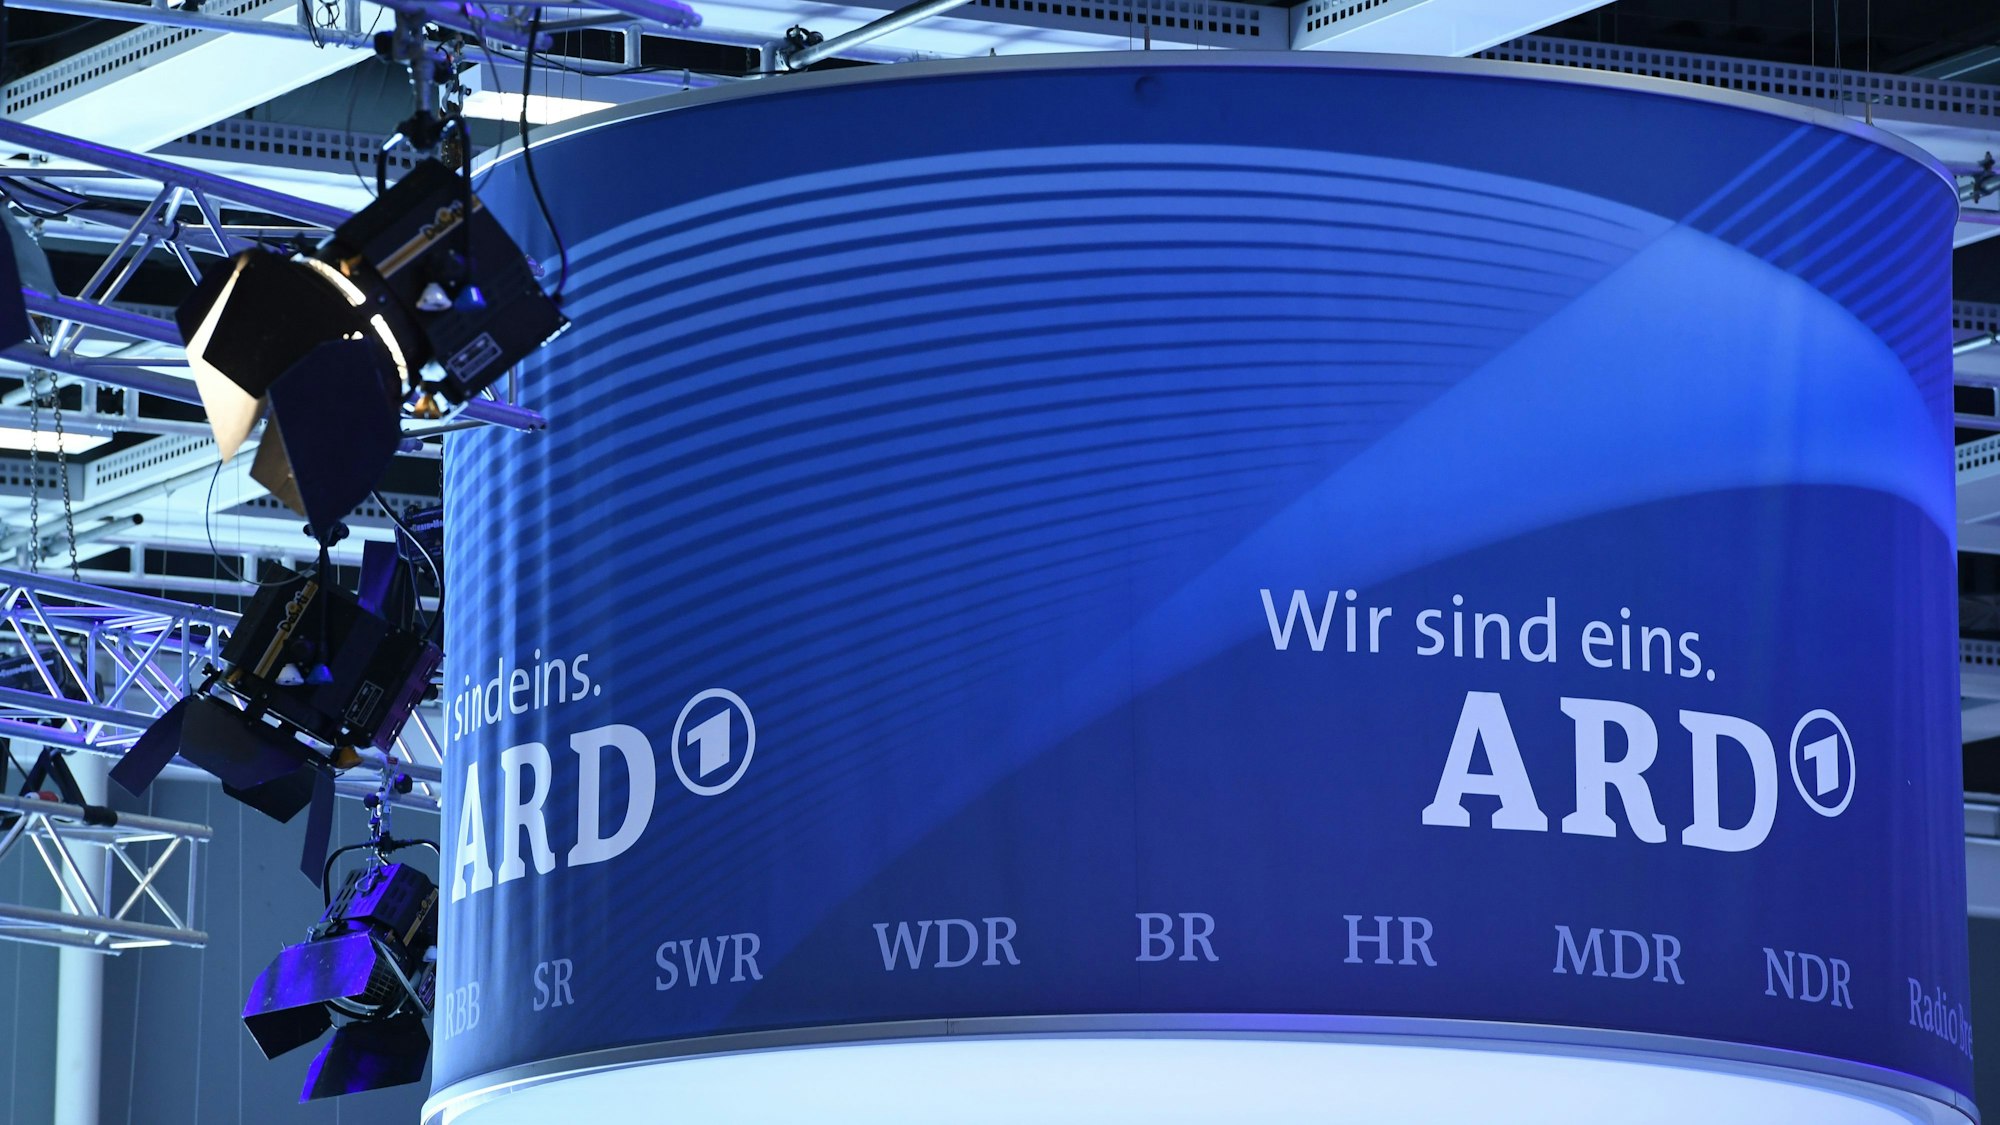 "Wir sind eins. ARD", aufgenommen am 01.09.2016 in Berlin auf der Internationalen Funk-Ausstellung IFA.